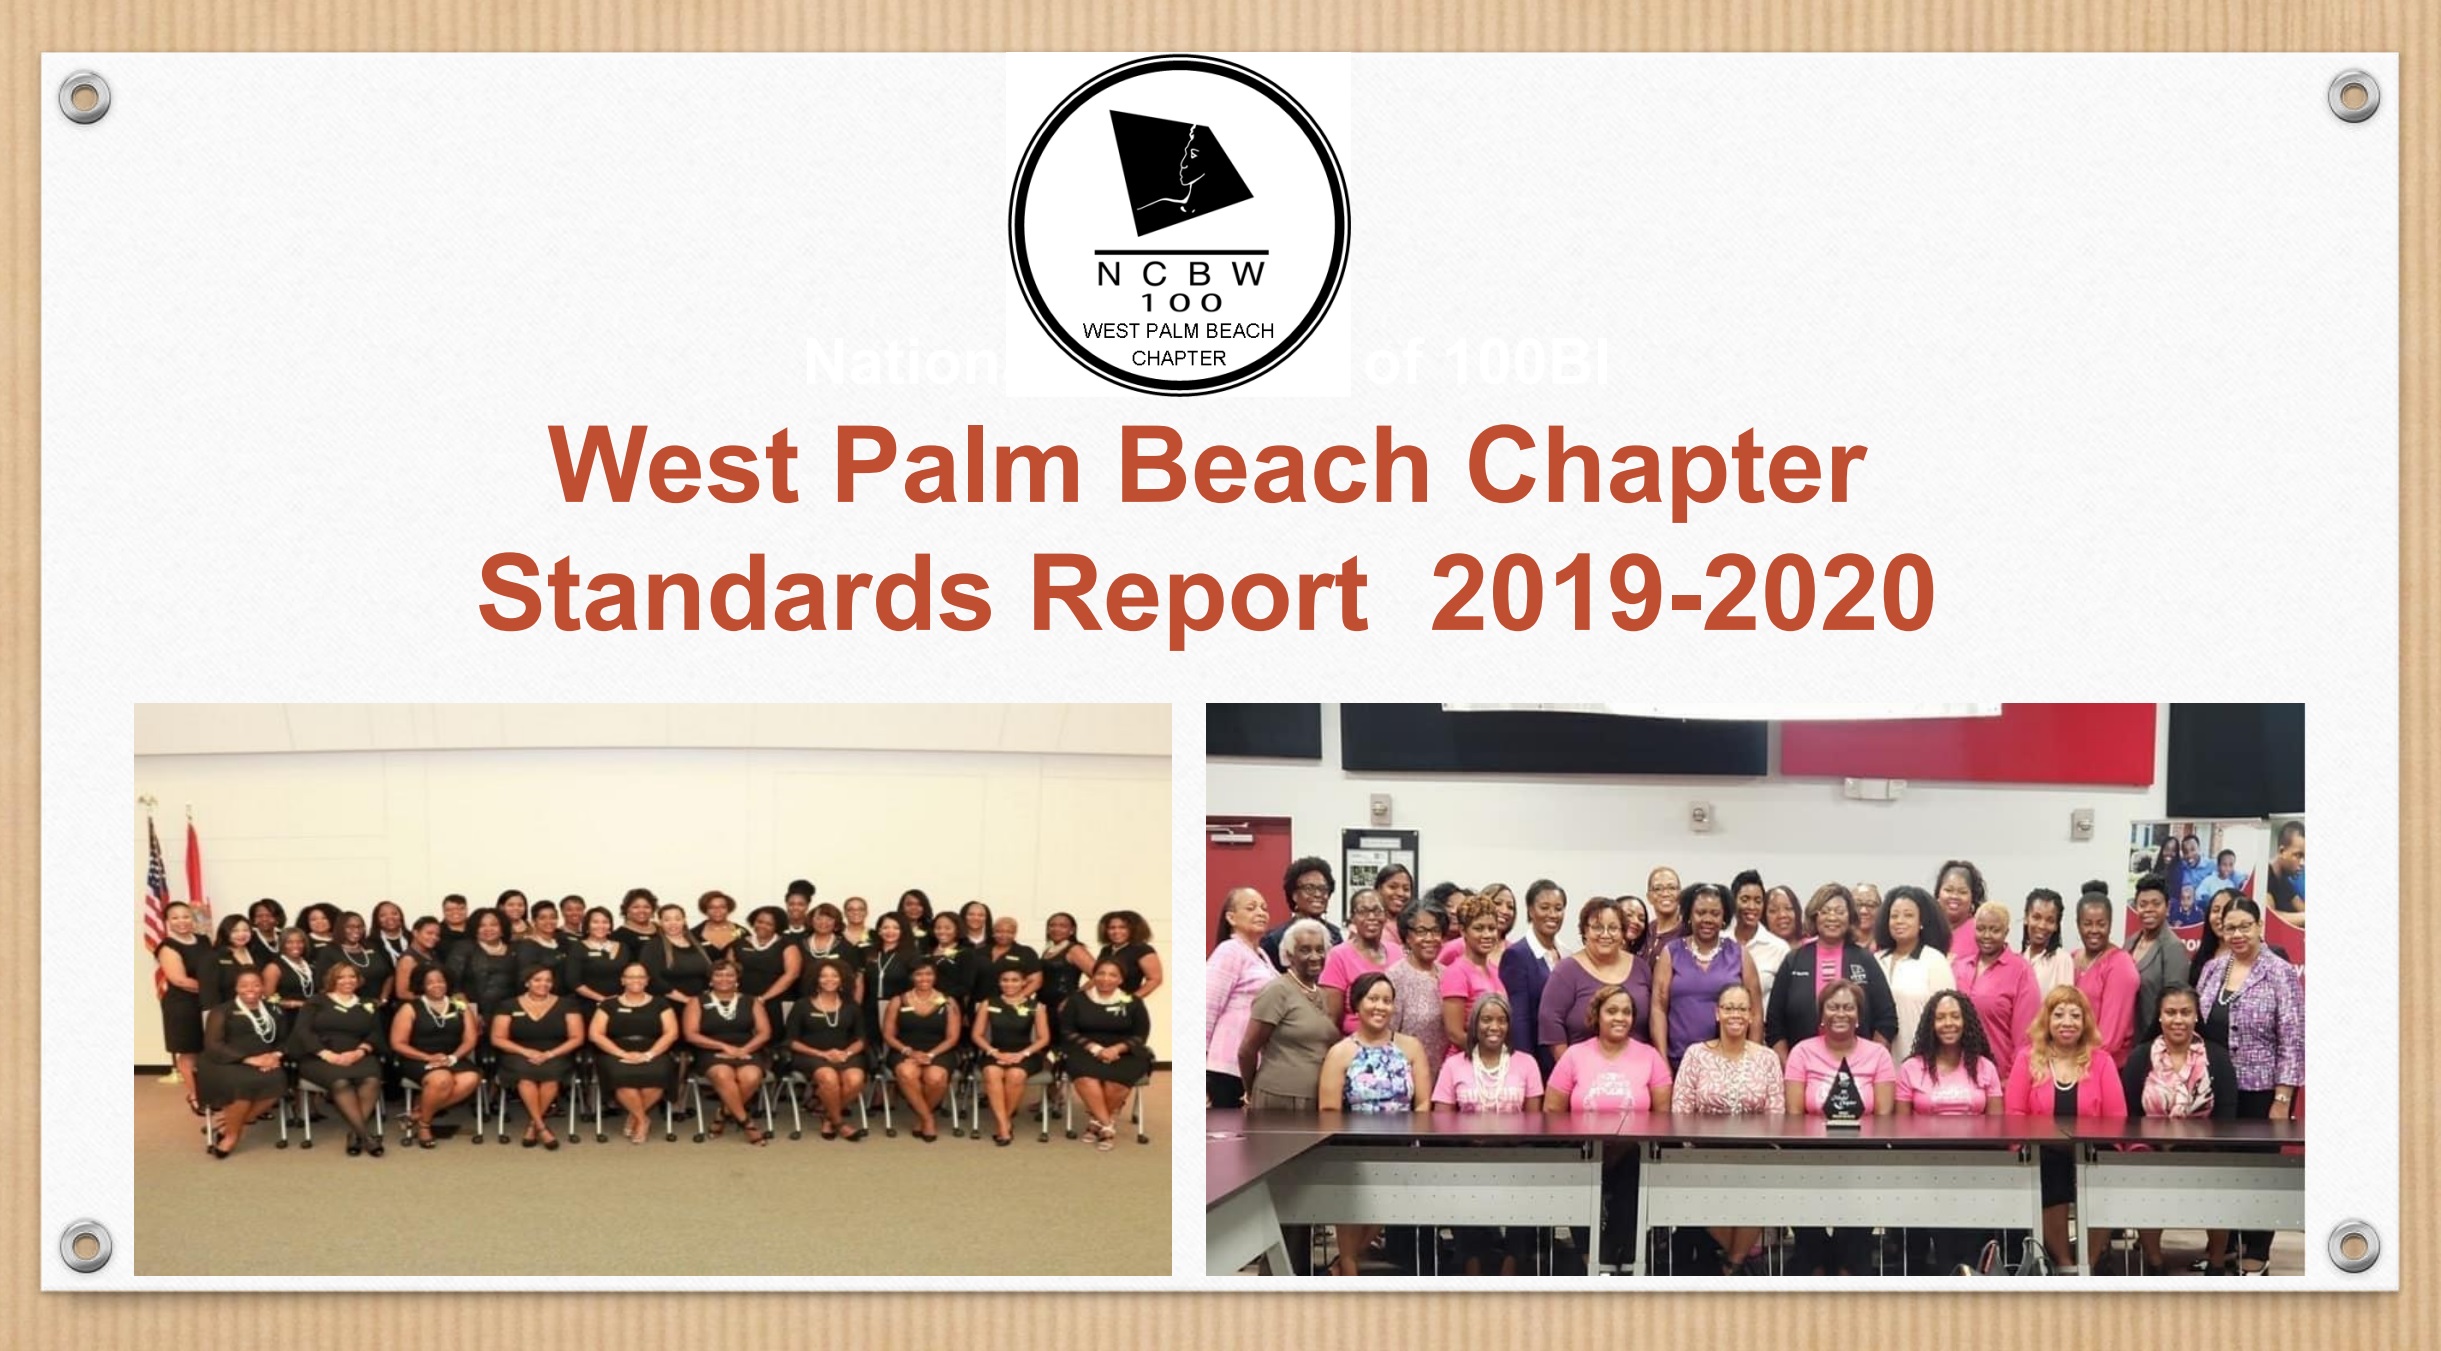 2019-2020 Standards Report